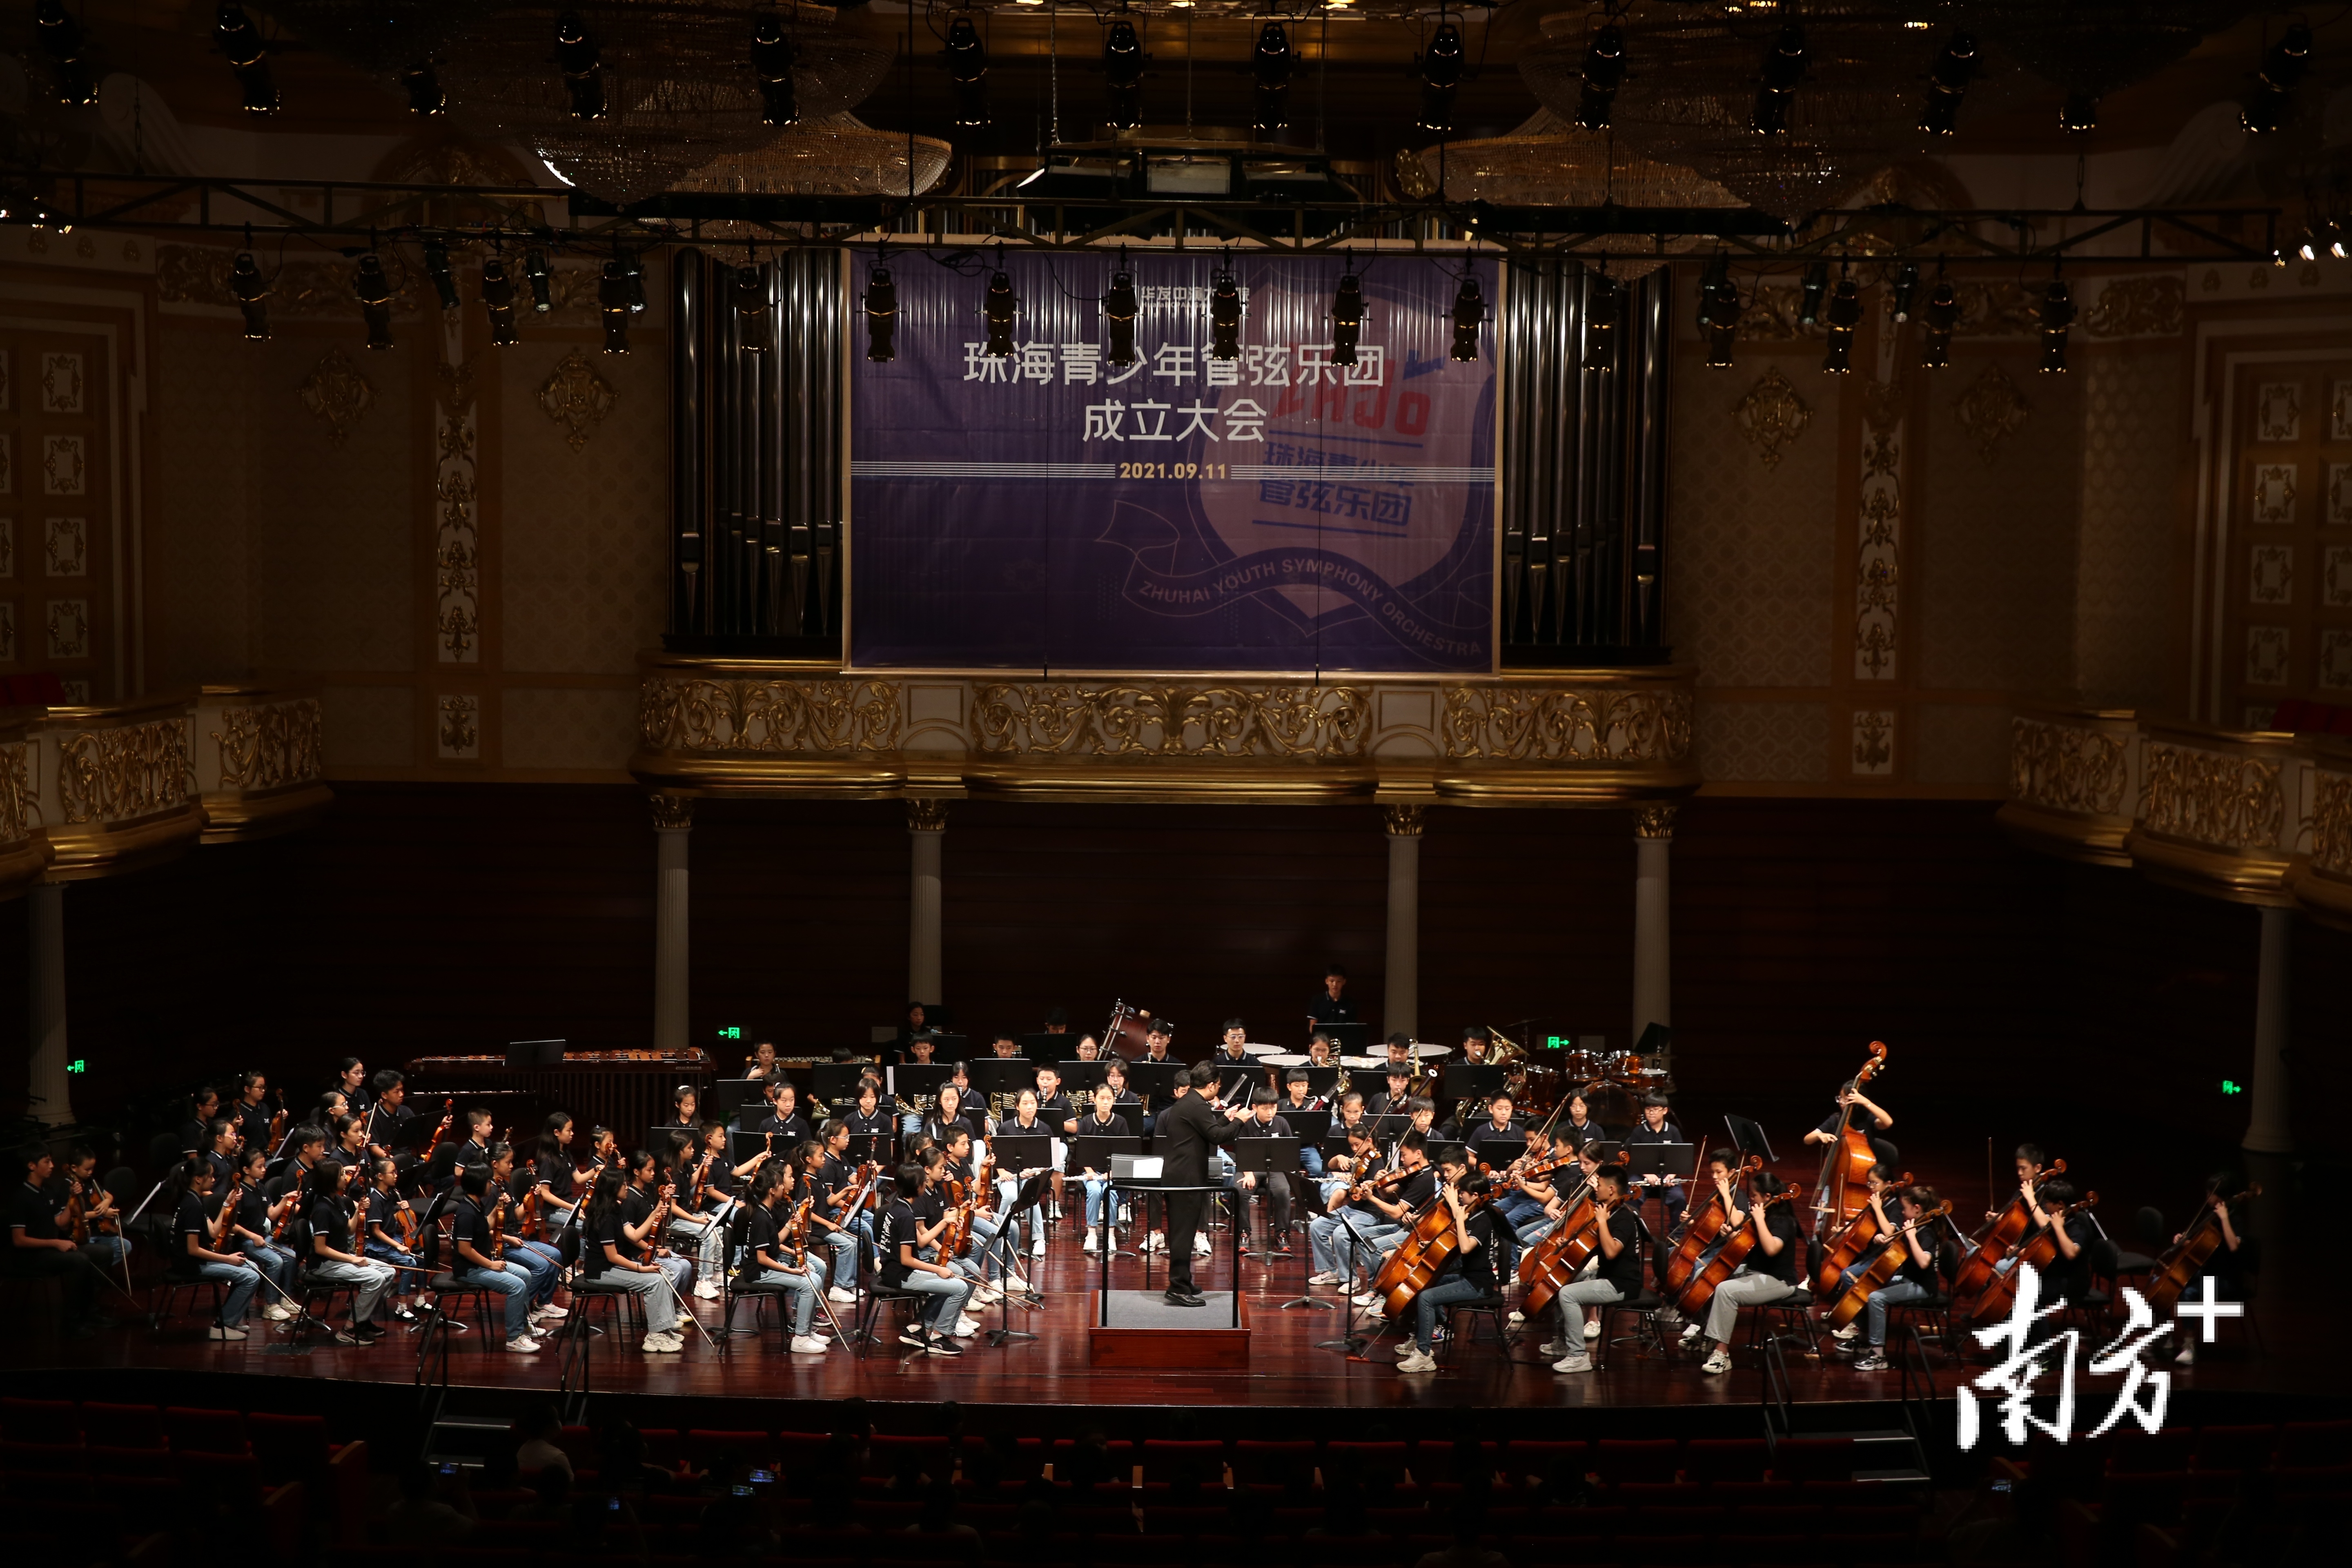 珠海青少年管弦乐团成立 以音乐促青少年文化交流